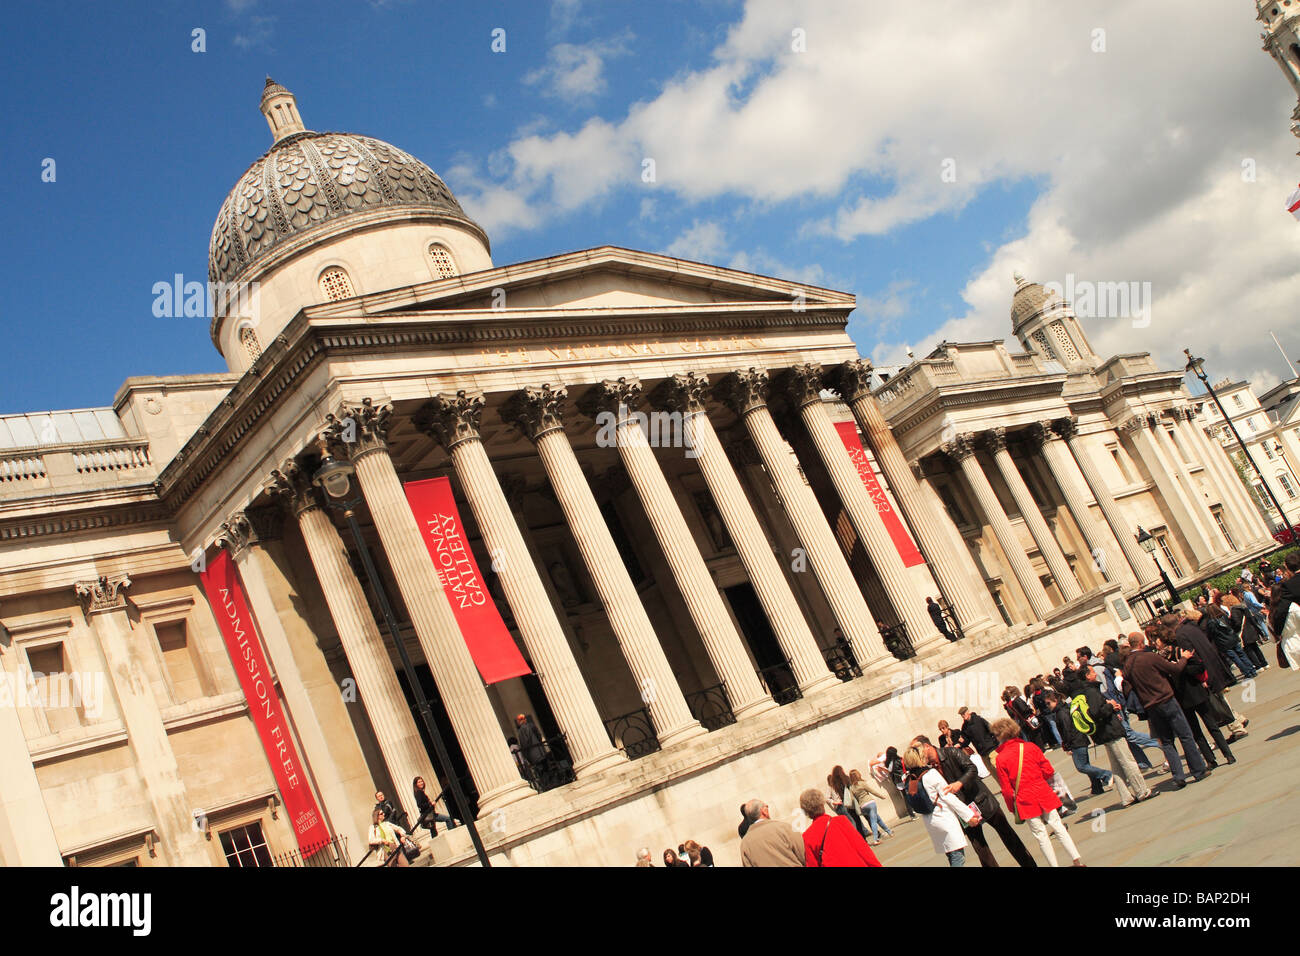 La National Gallery de Londres Musée art gallery est située à Trafalgar Square Londres conçu par William Wilklins Banque D'Images